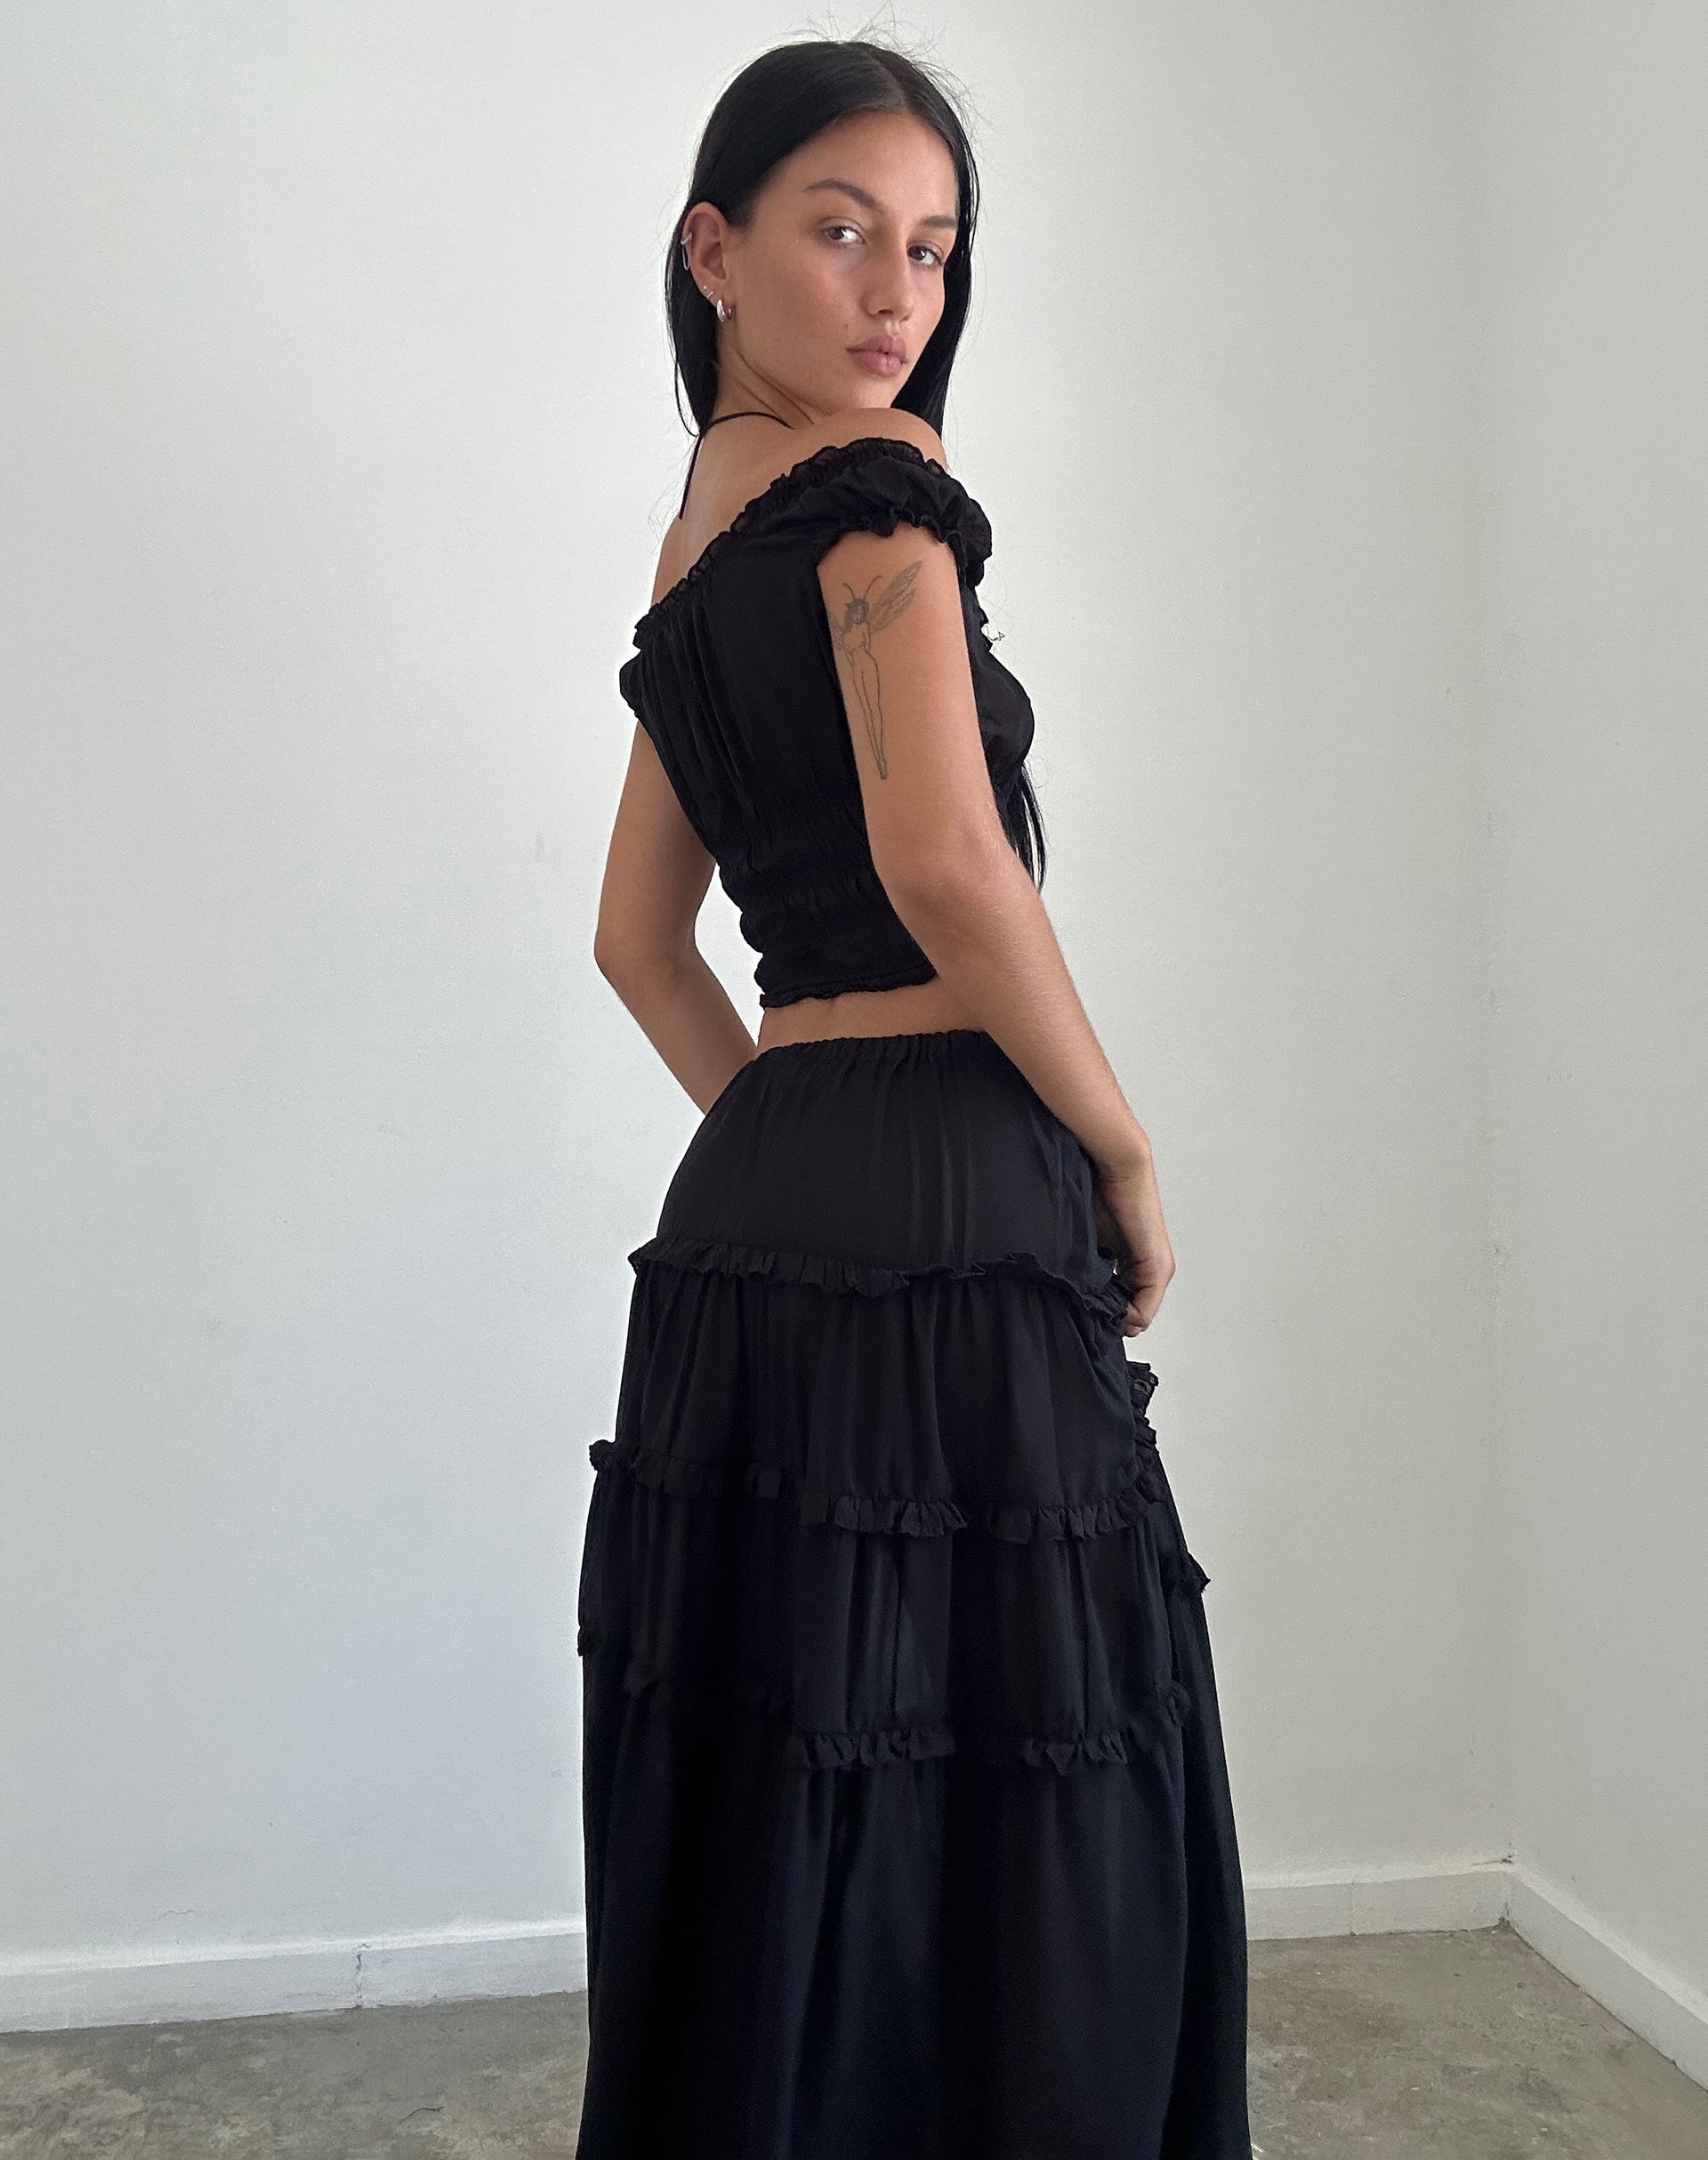 Image of Xavi Shirred Bardot Top in Chiffon Black